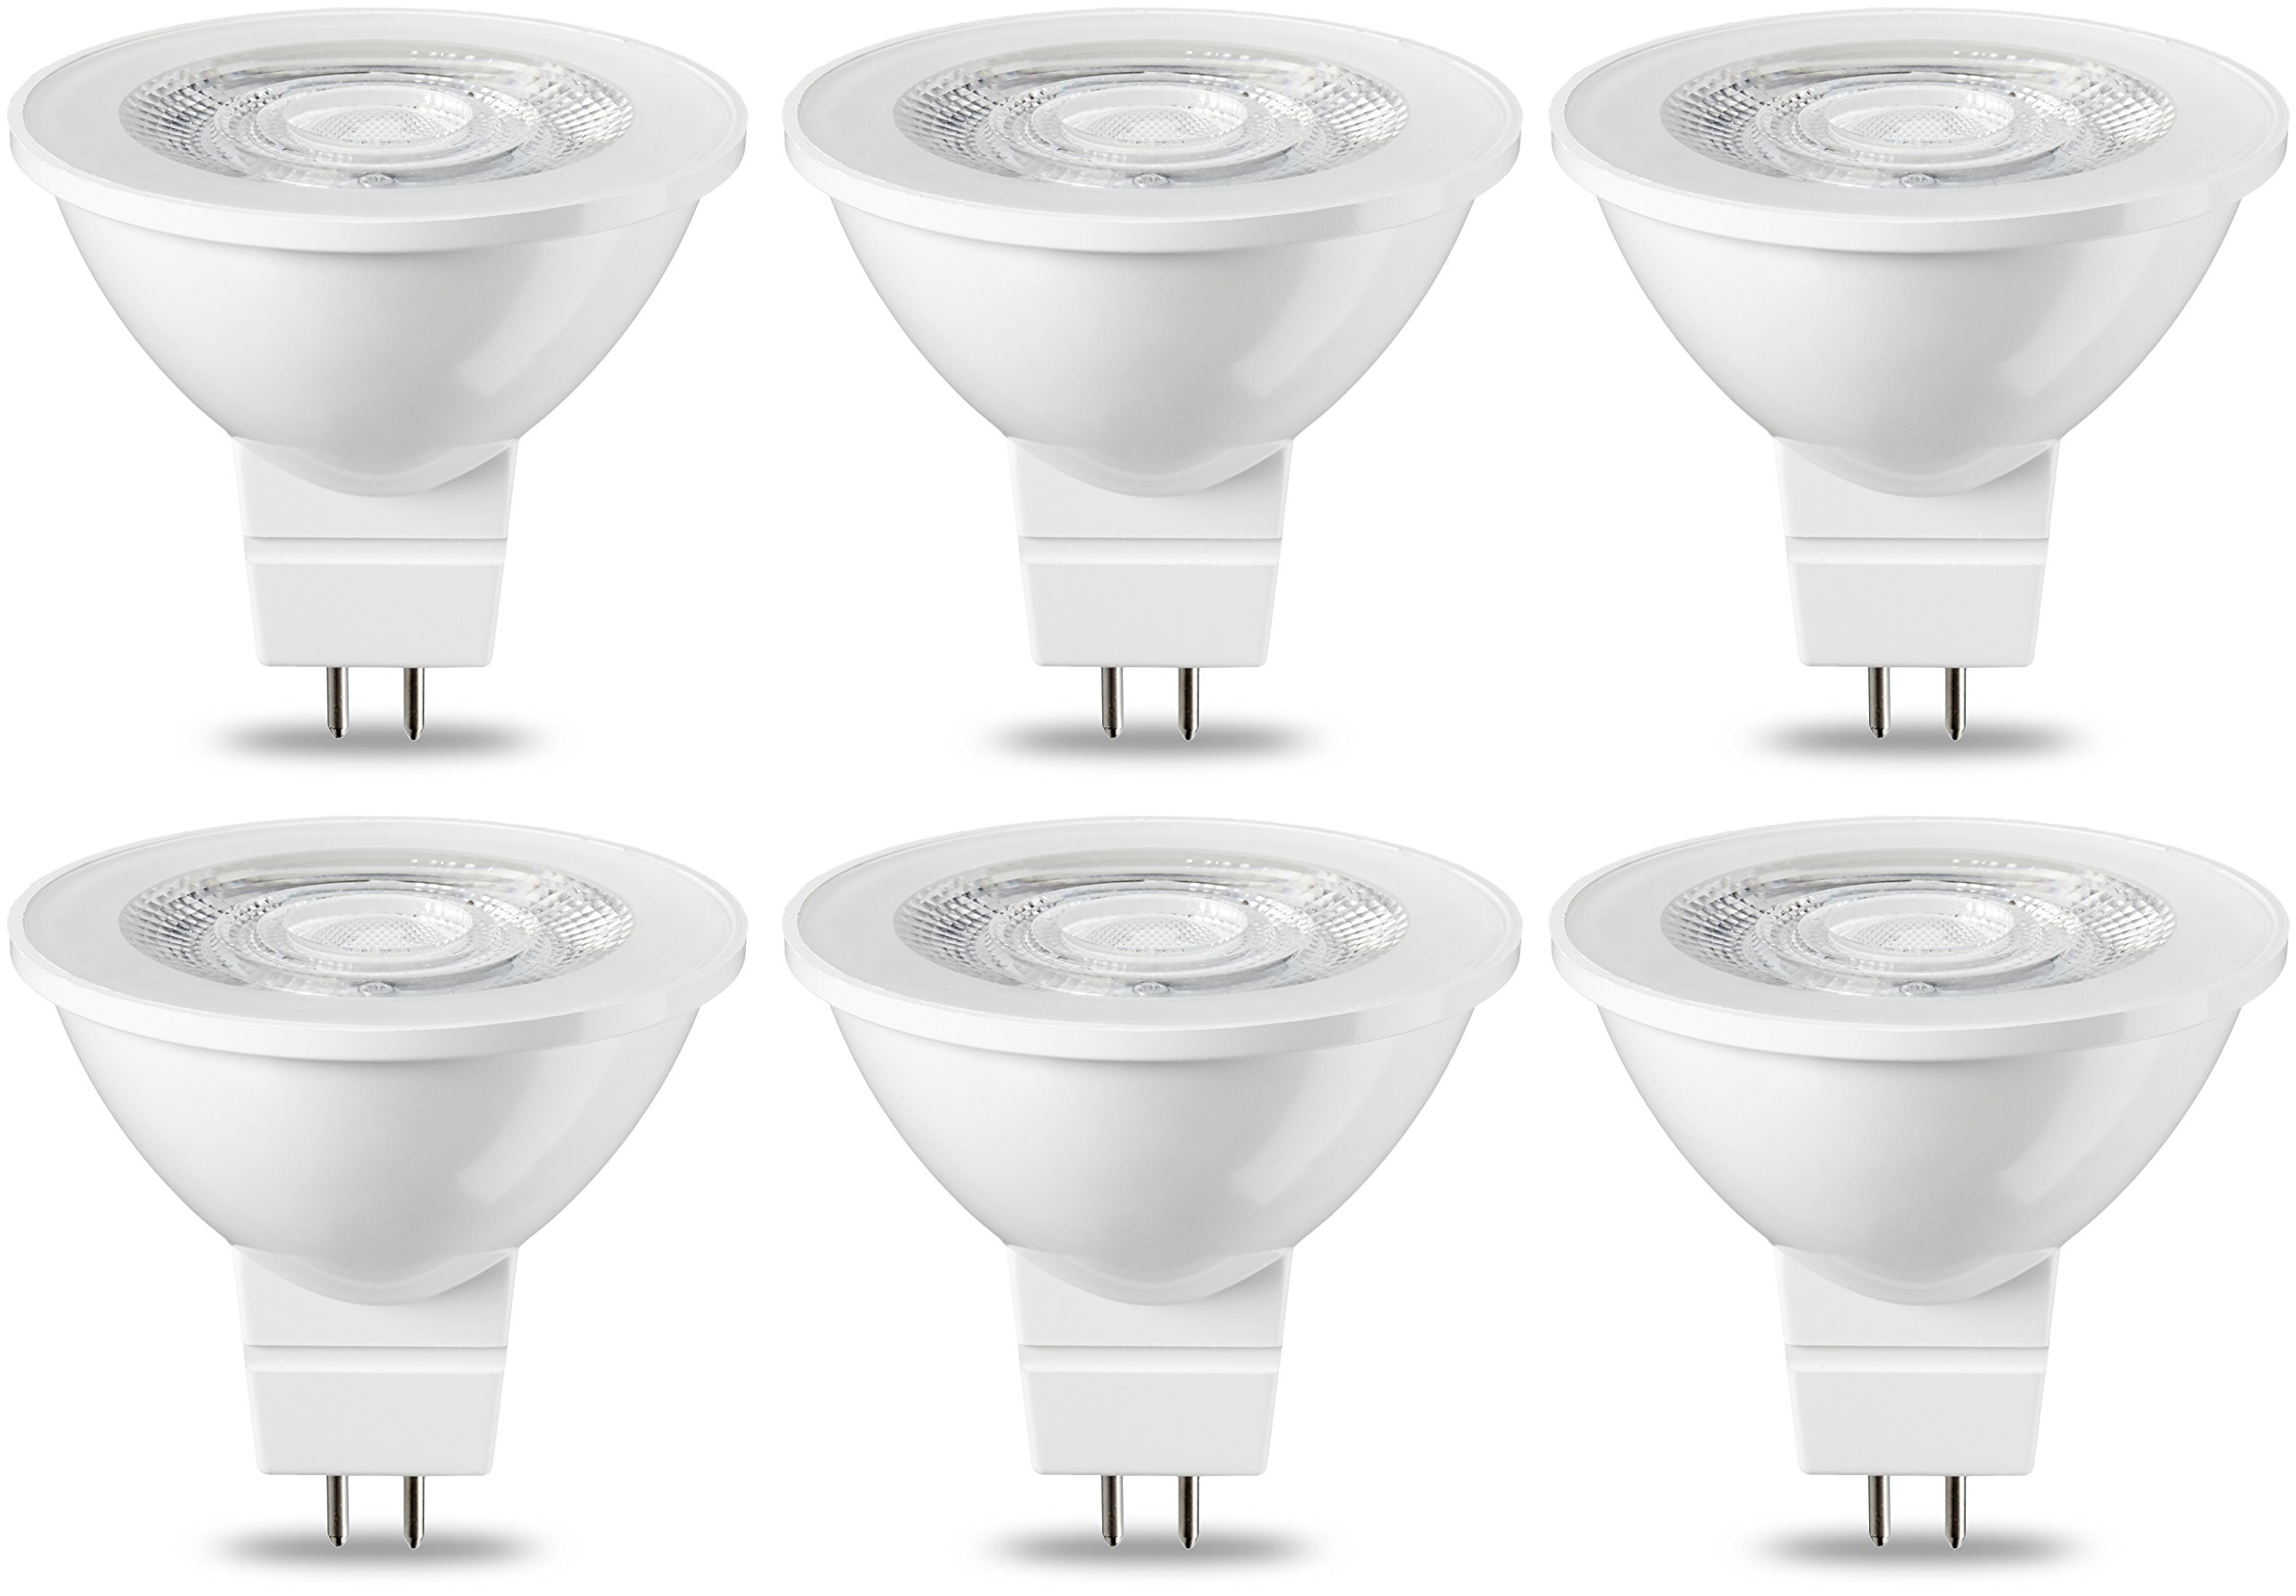 Achat Amazon Basics Lot de 6 ampoules spot LED GU5.3 MR16 4,5 W (équivalent 35 W) Blanc Chaud Intensité non variable qSEnV3hnR frais